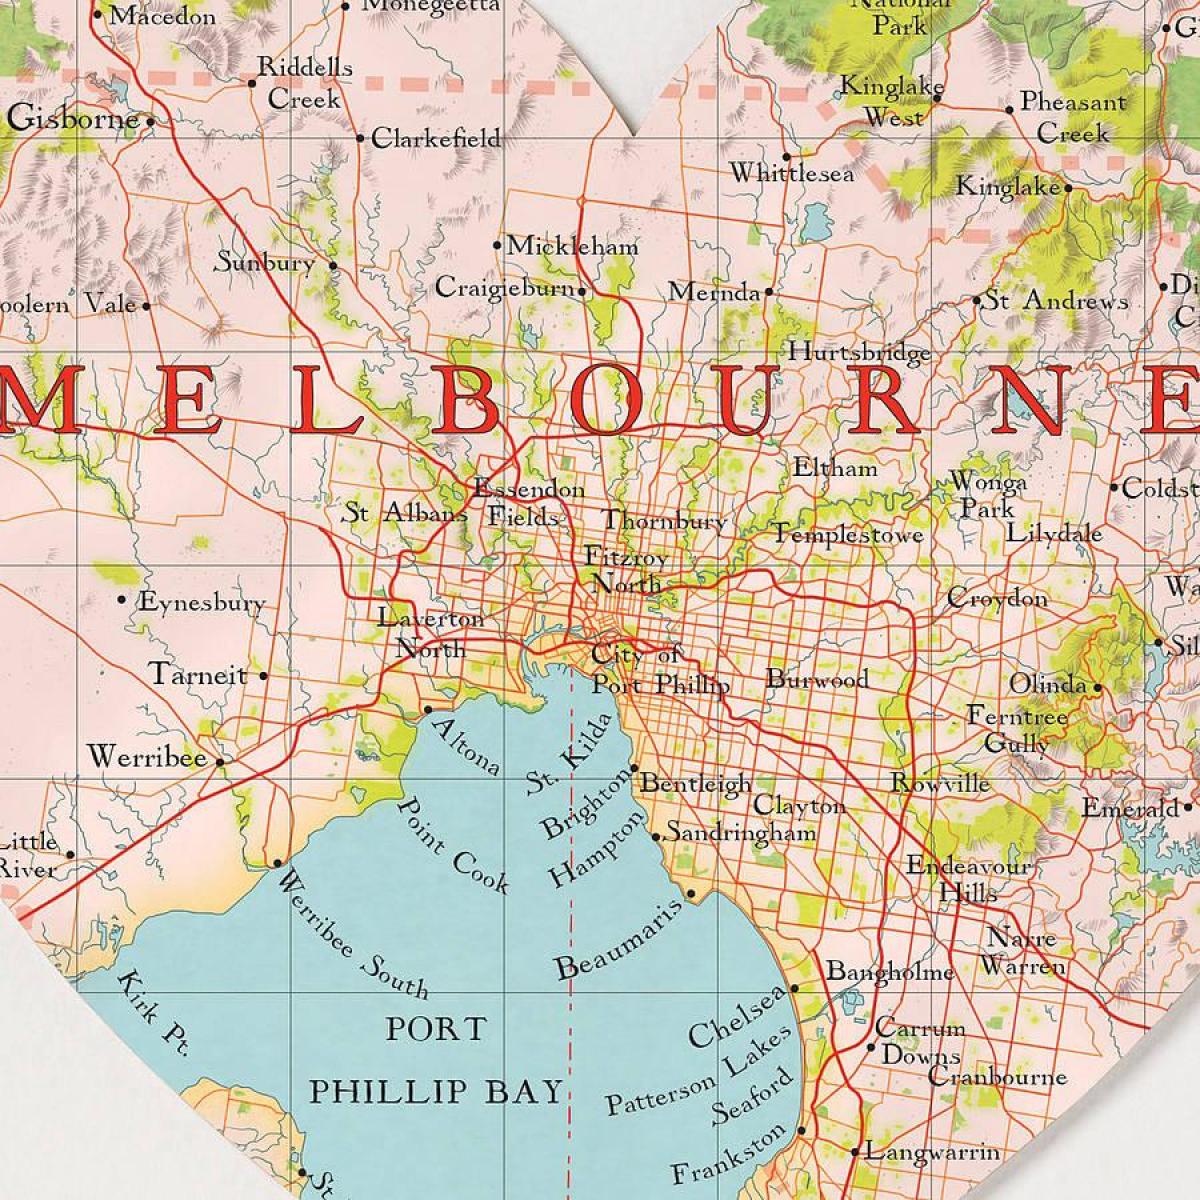 Свет Мелбурну мапи